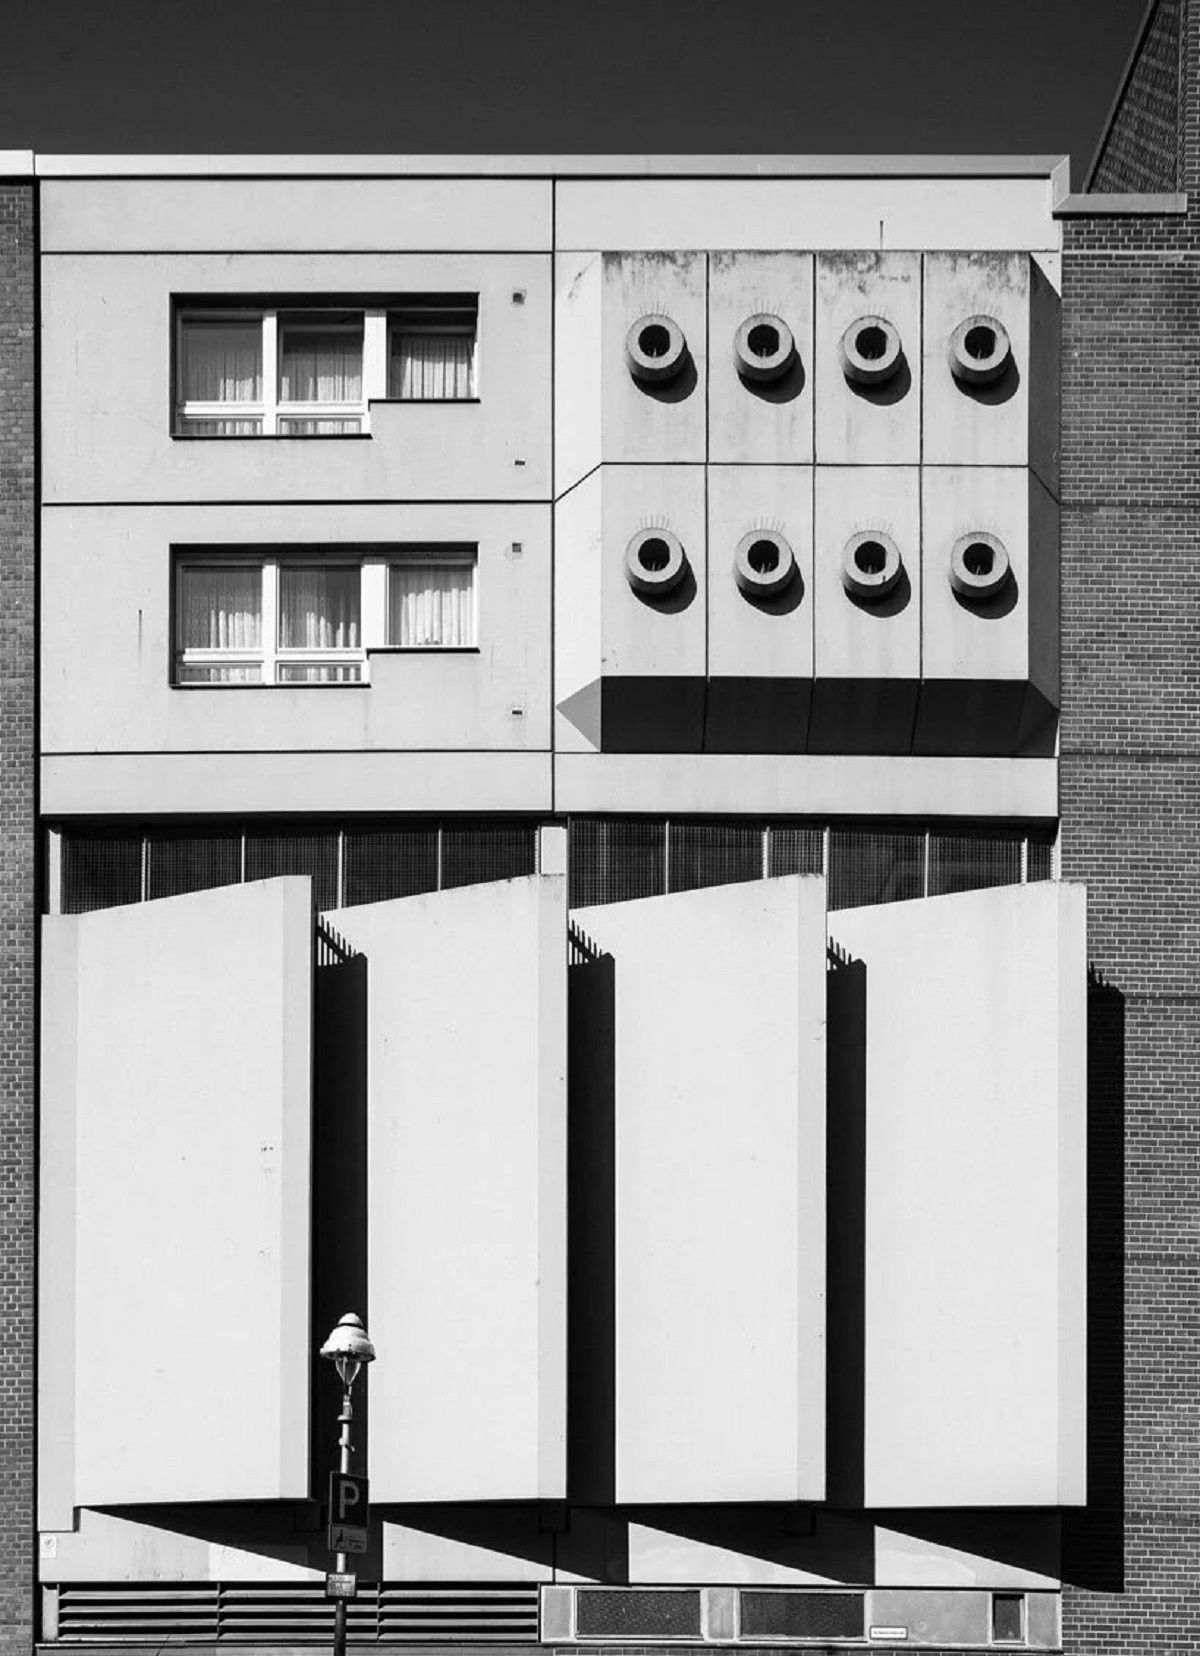 Hình ảnh độc đáo về kiến trúc Brutalism của Berlin từ những năm 1950 cho đến ngày nay